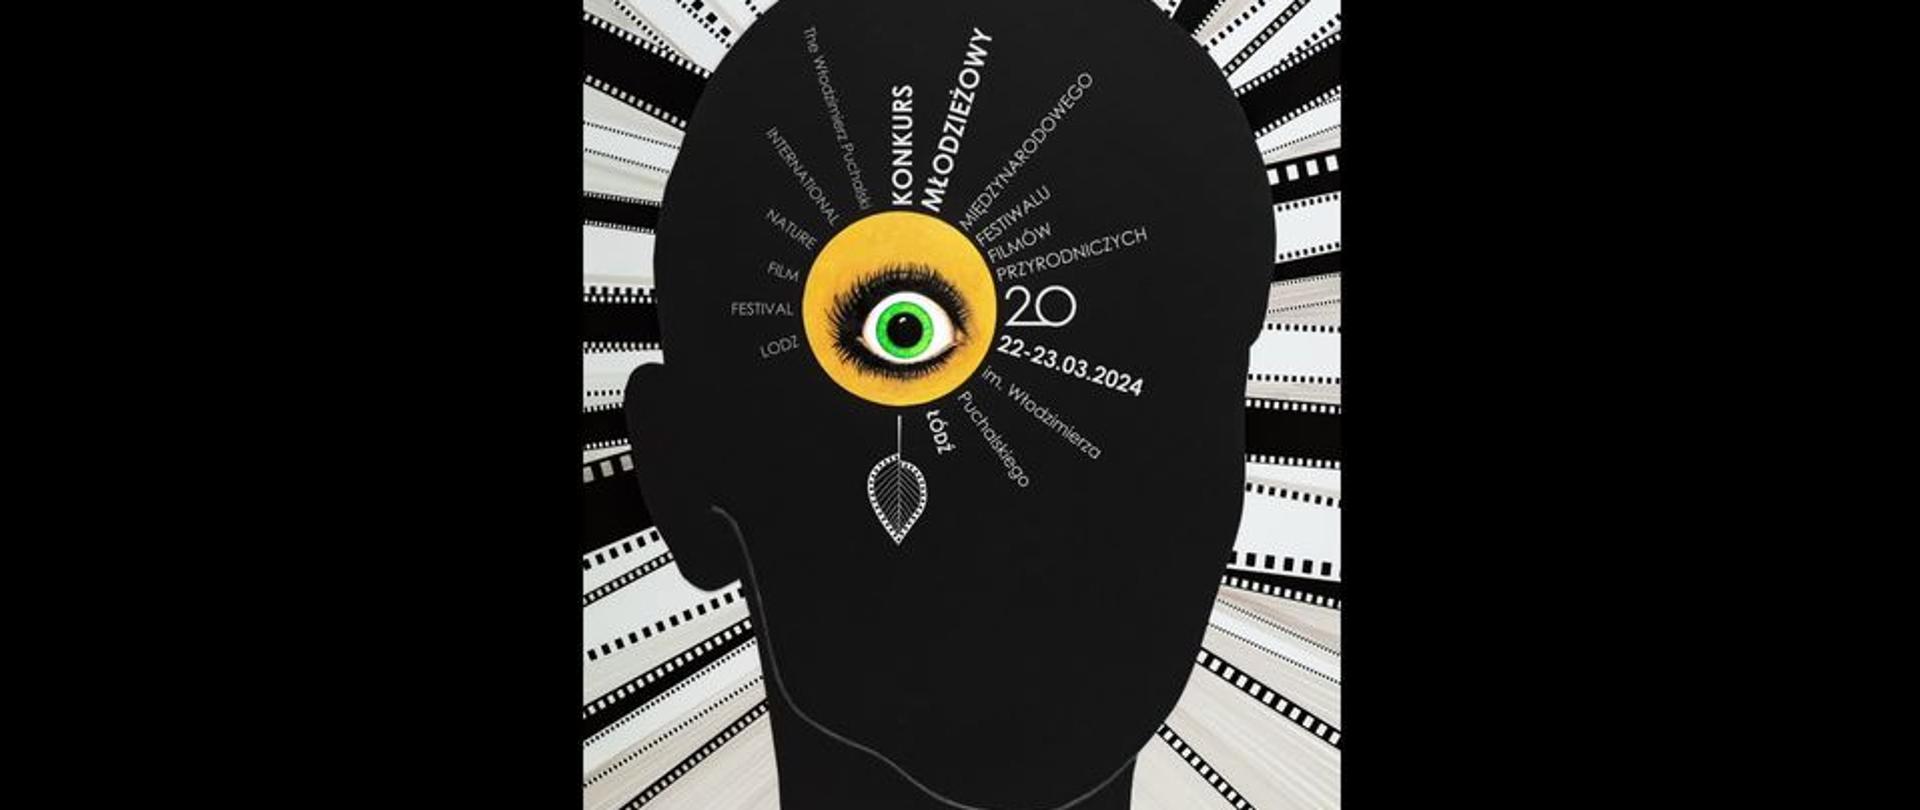 Plakat: czarny kontur głowy na tle biało czarnych taśm filmowych